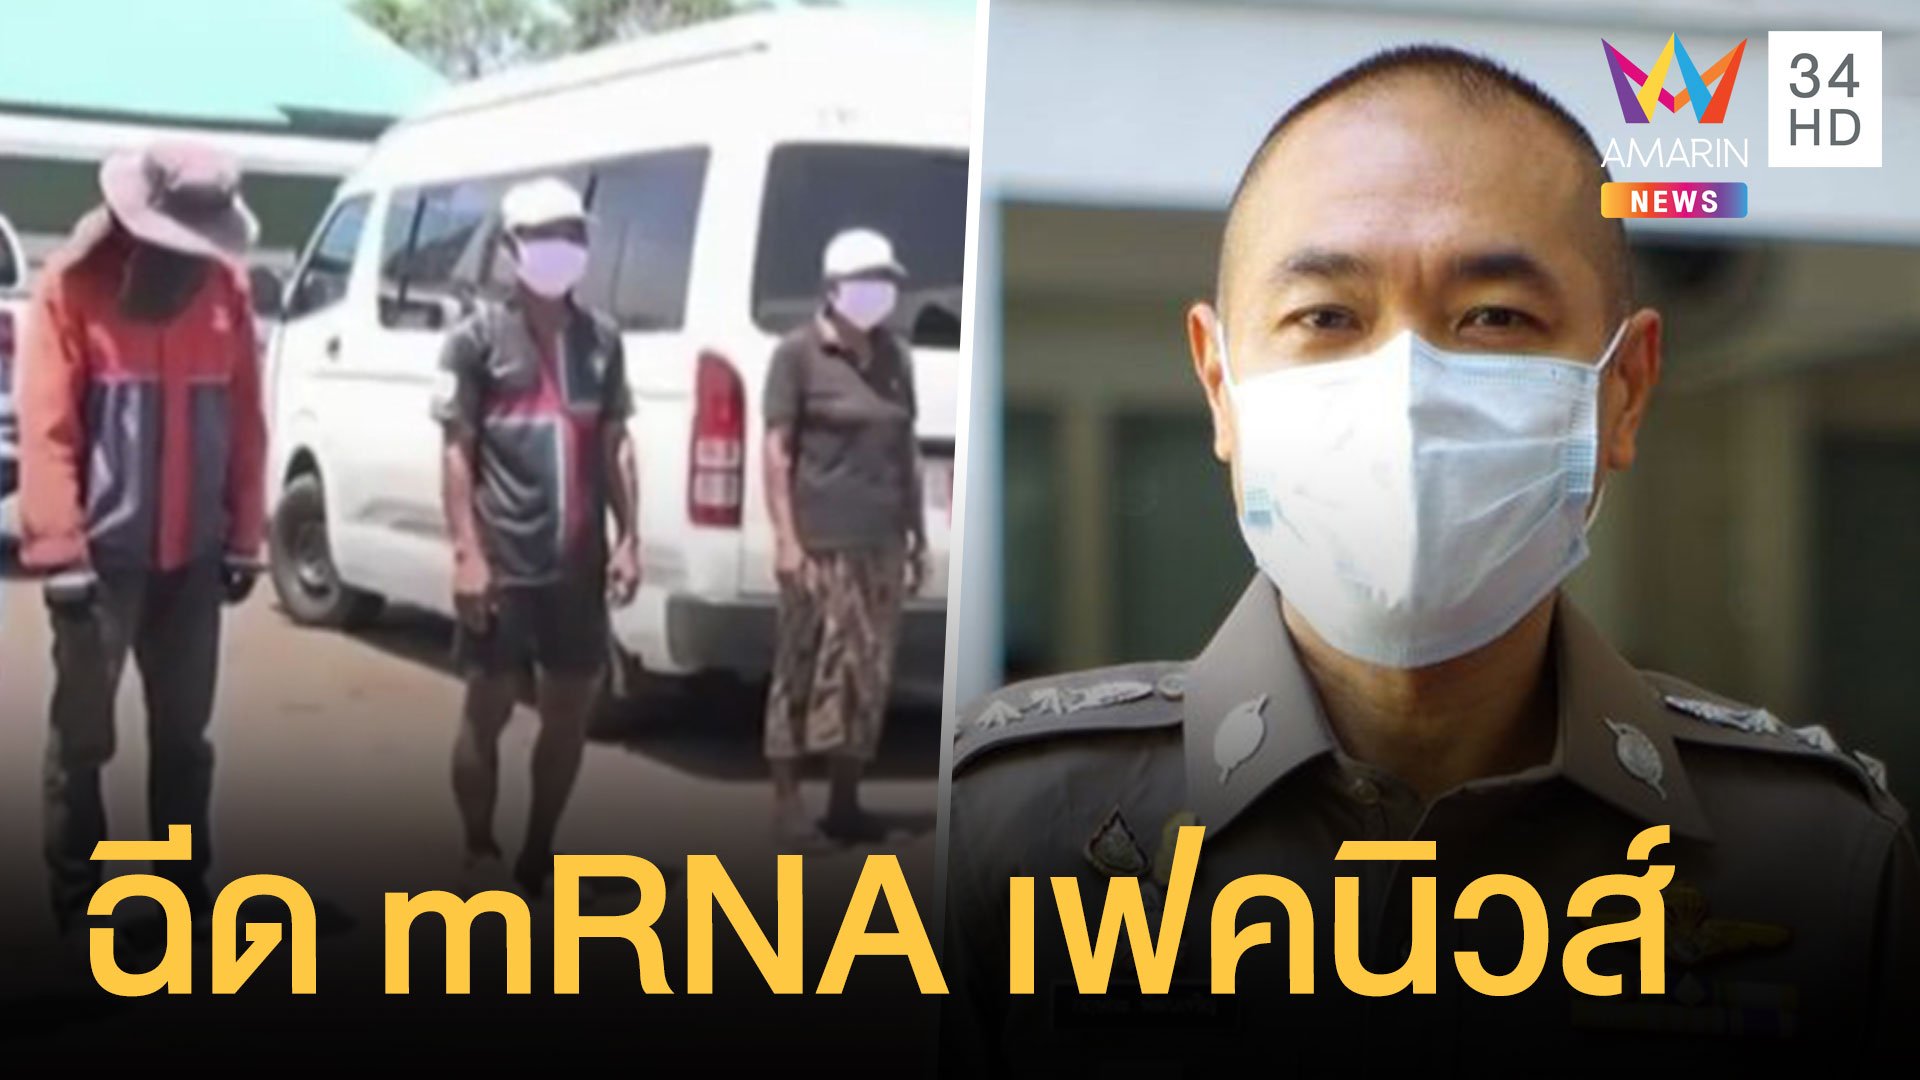 ตร.แถลง 7 คนไทยถูกจับ ฉีด mRNA ให้เป็นเฟคนิวส์ | ข่าวอรุณอมรินทร์ | 4 ส.ค. 64 | AMARIN TVHD34